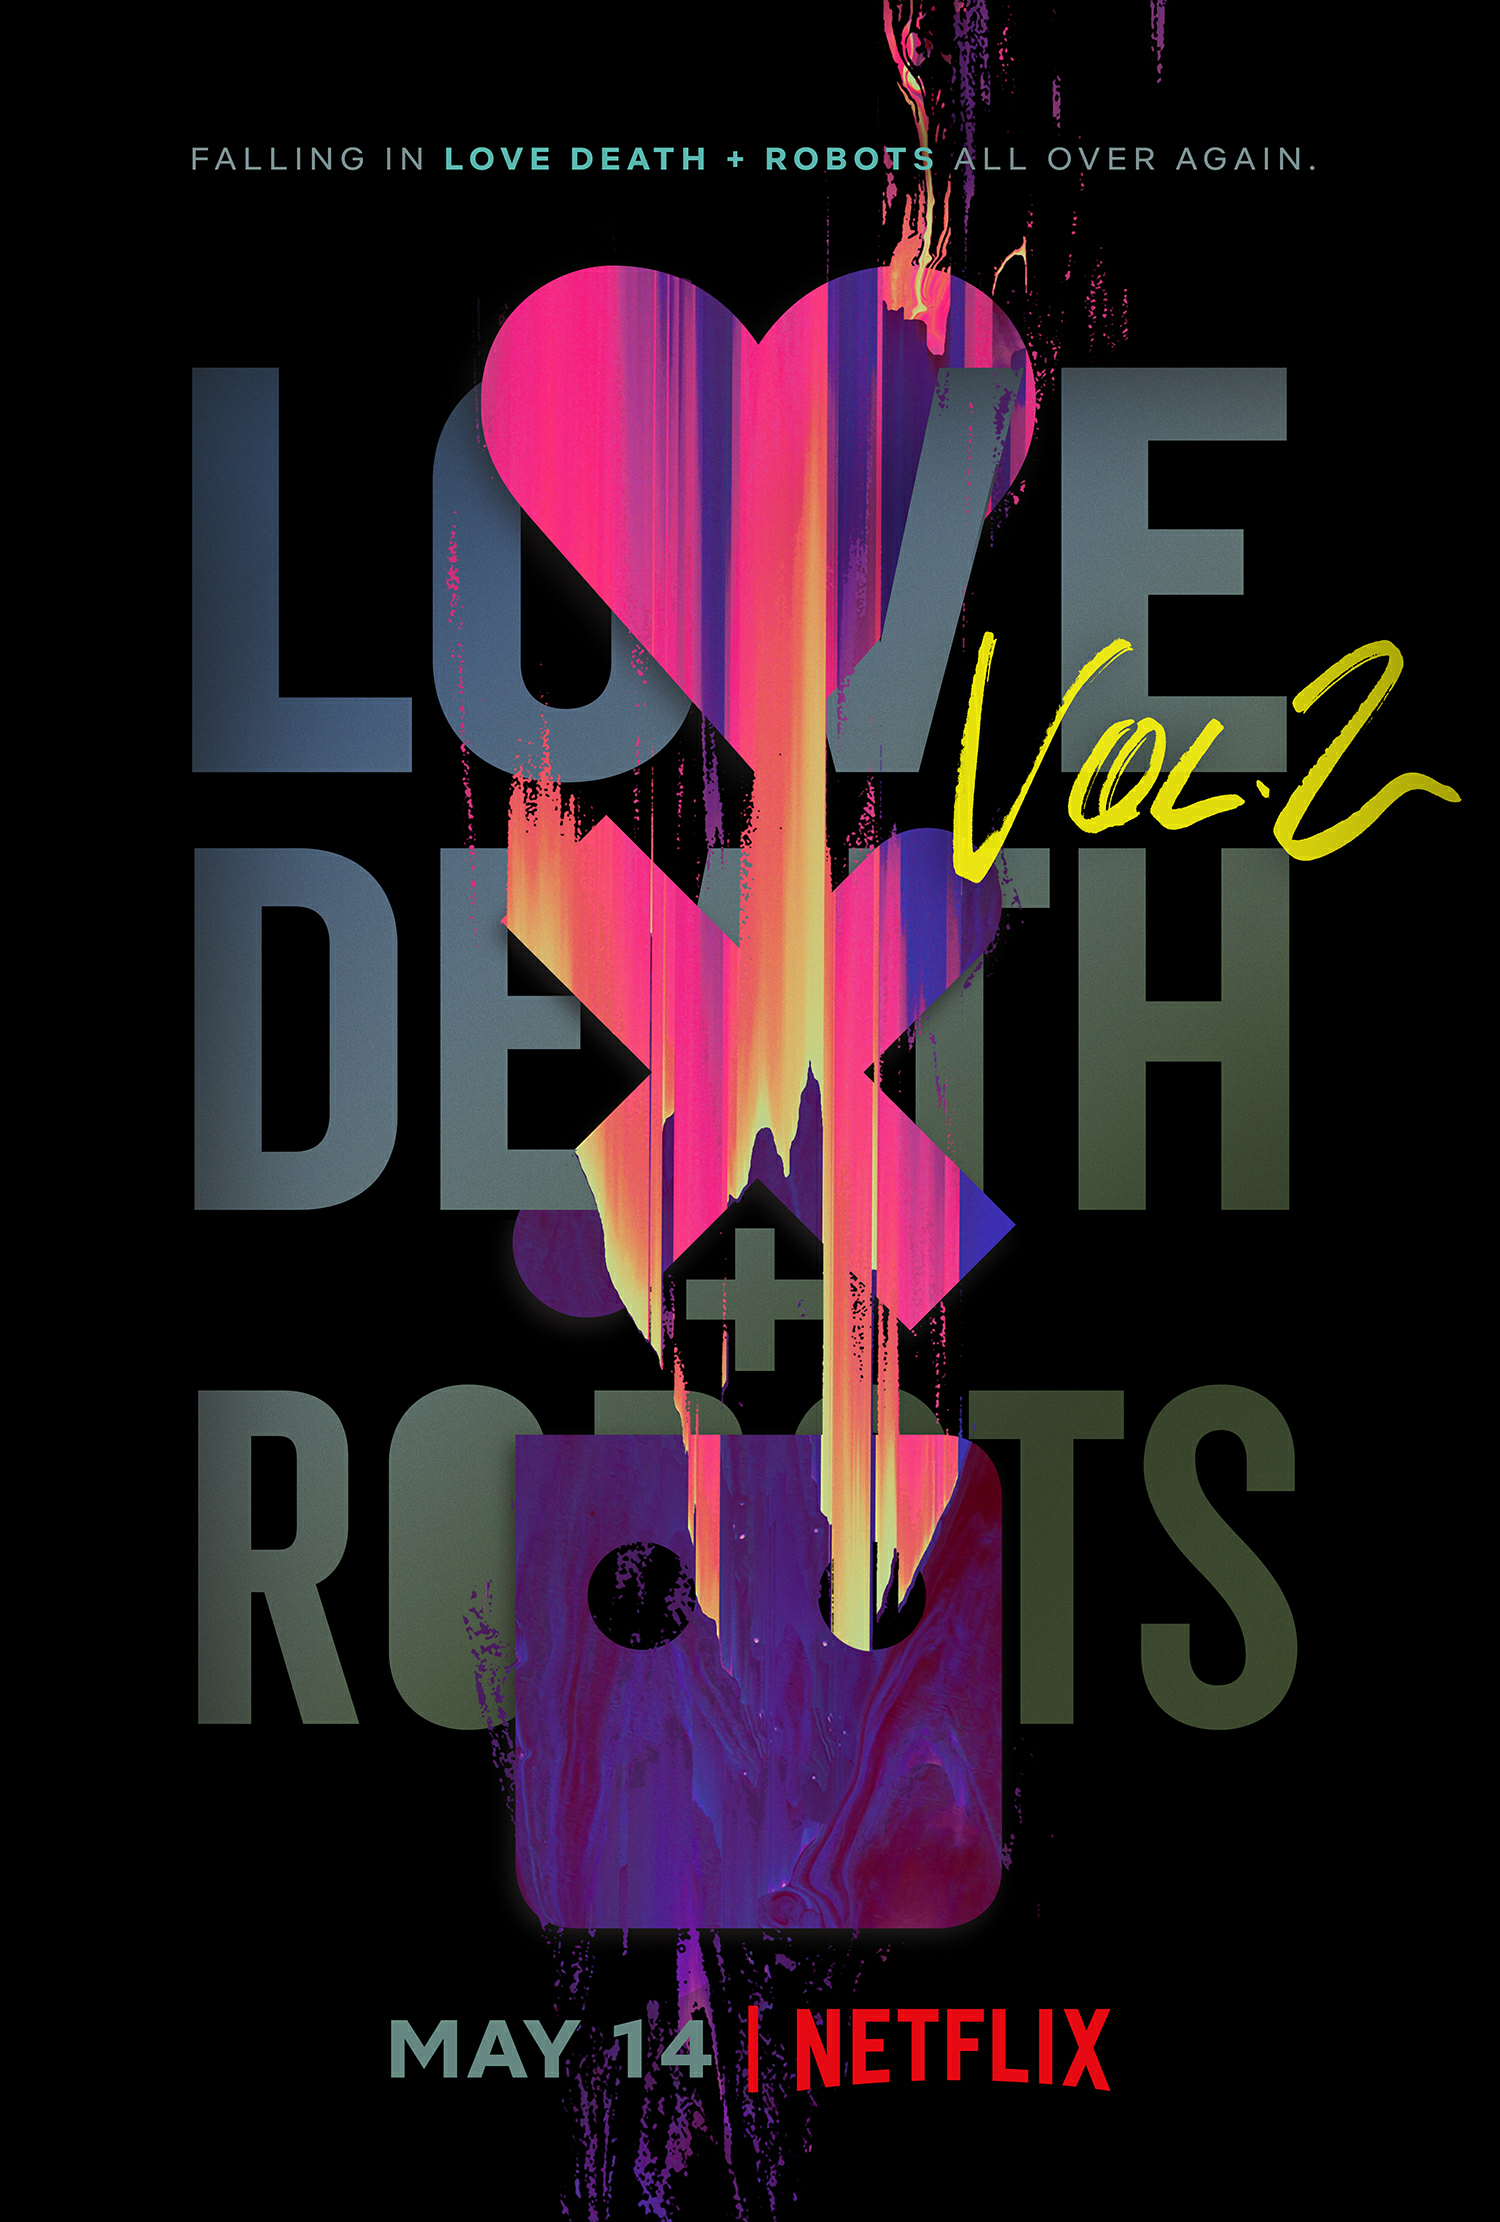  海报：爱，死亡和机器人 第二季，导演: 蒂姆·米勒。 